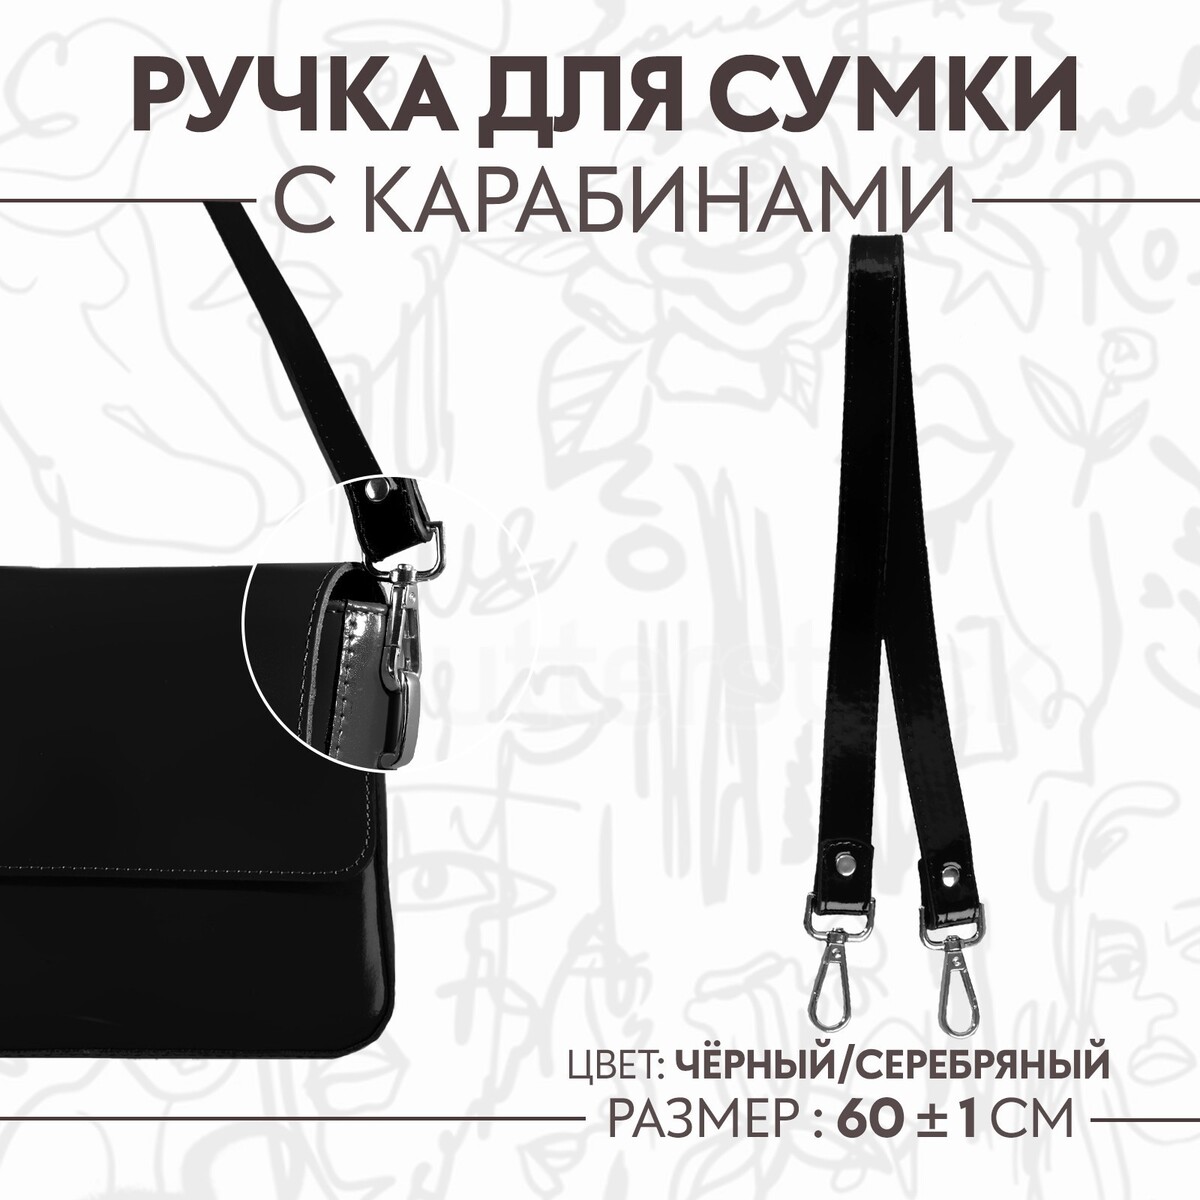 Ручка для сумки лакированная, с карабинами, 60 ± 1 см, цвет черный ручка для сумки лакированная с карабинами 60 ± 1 см